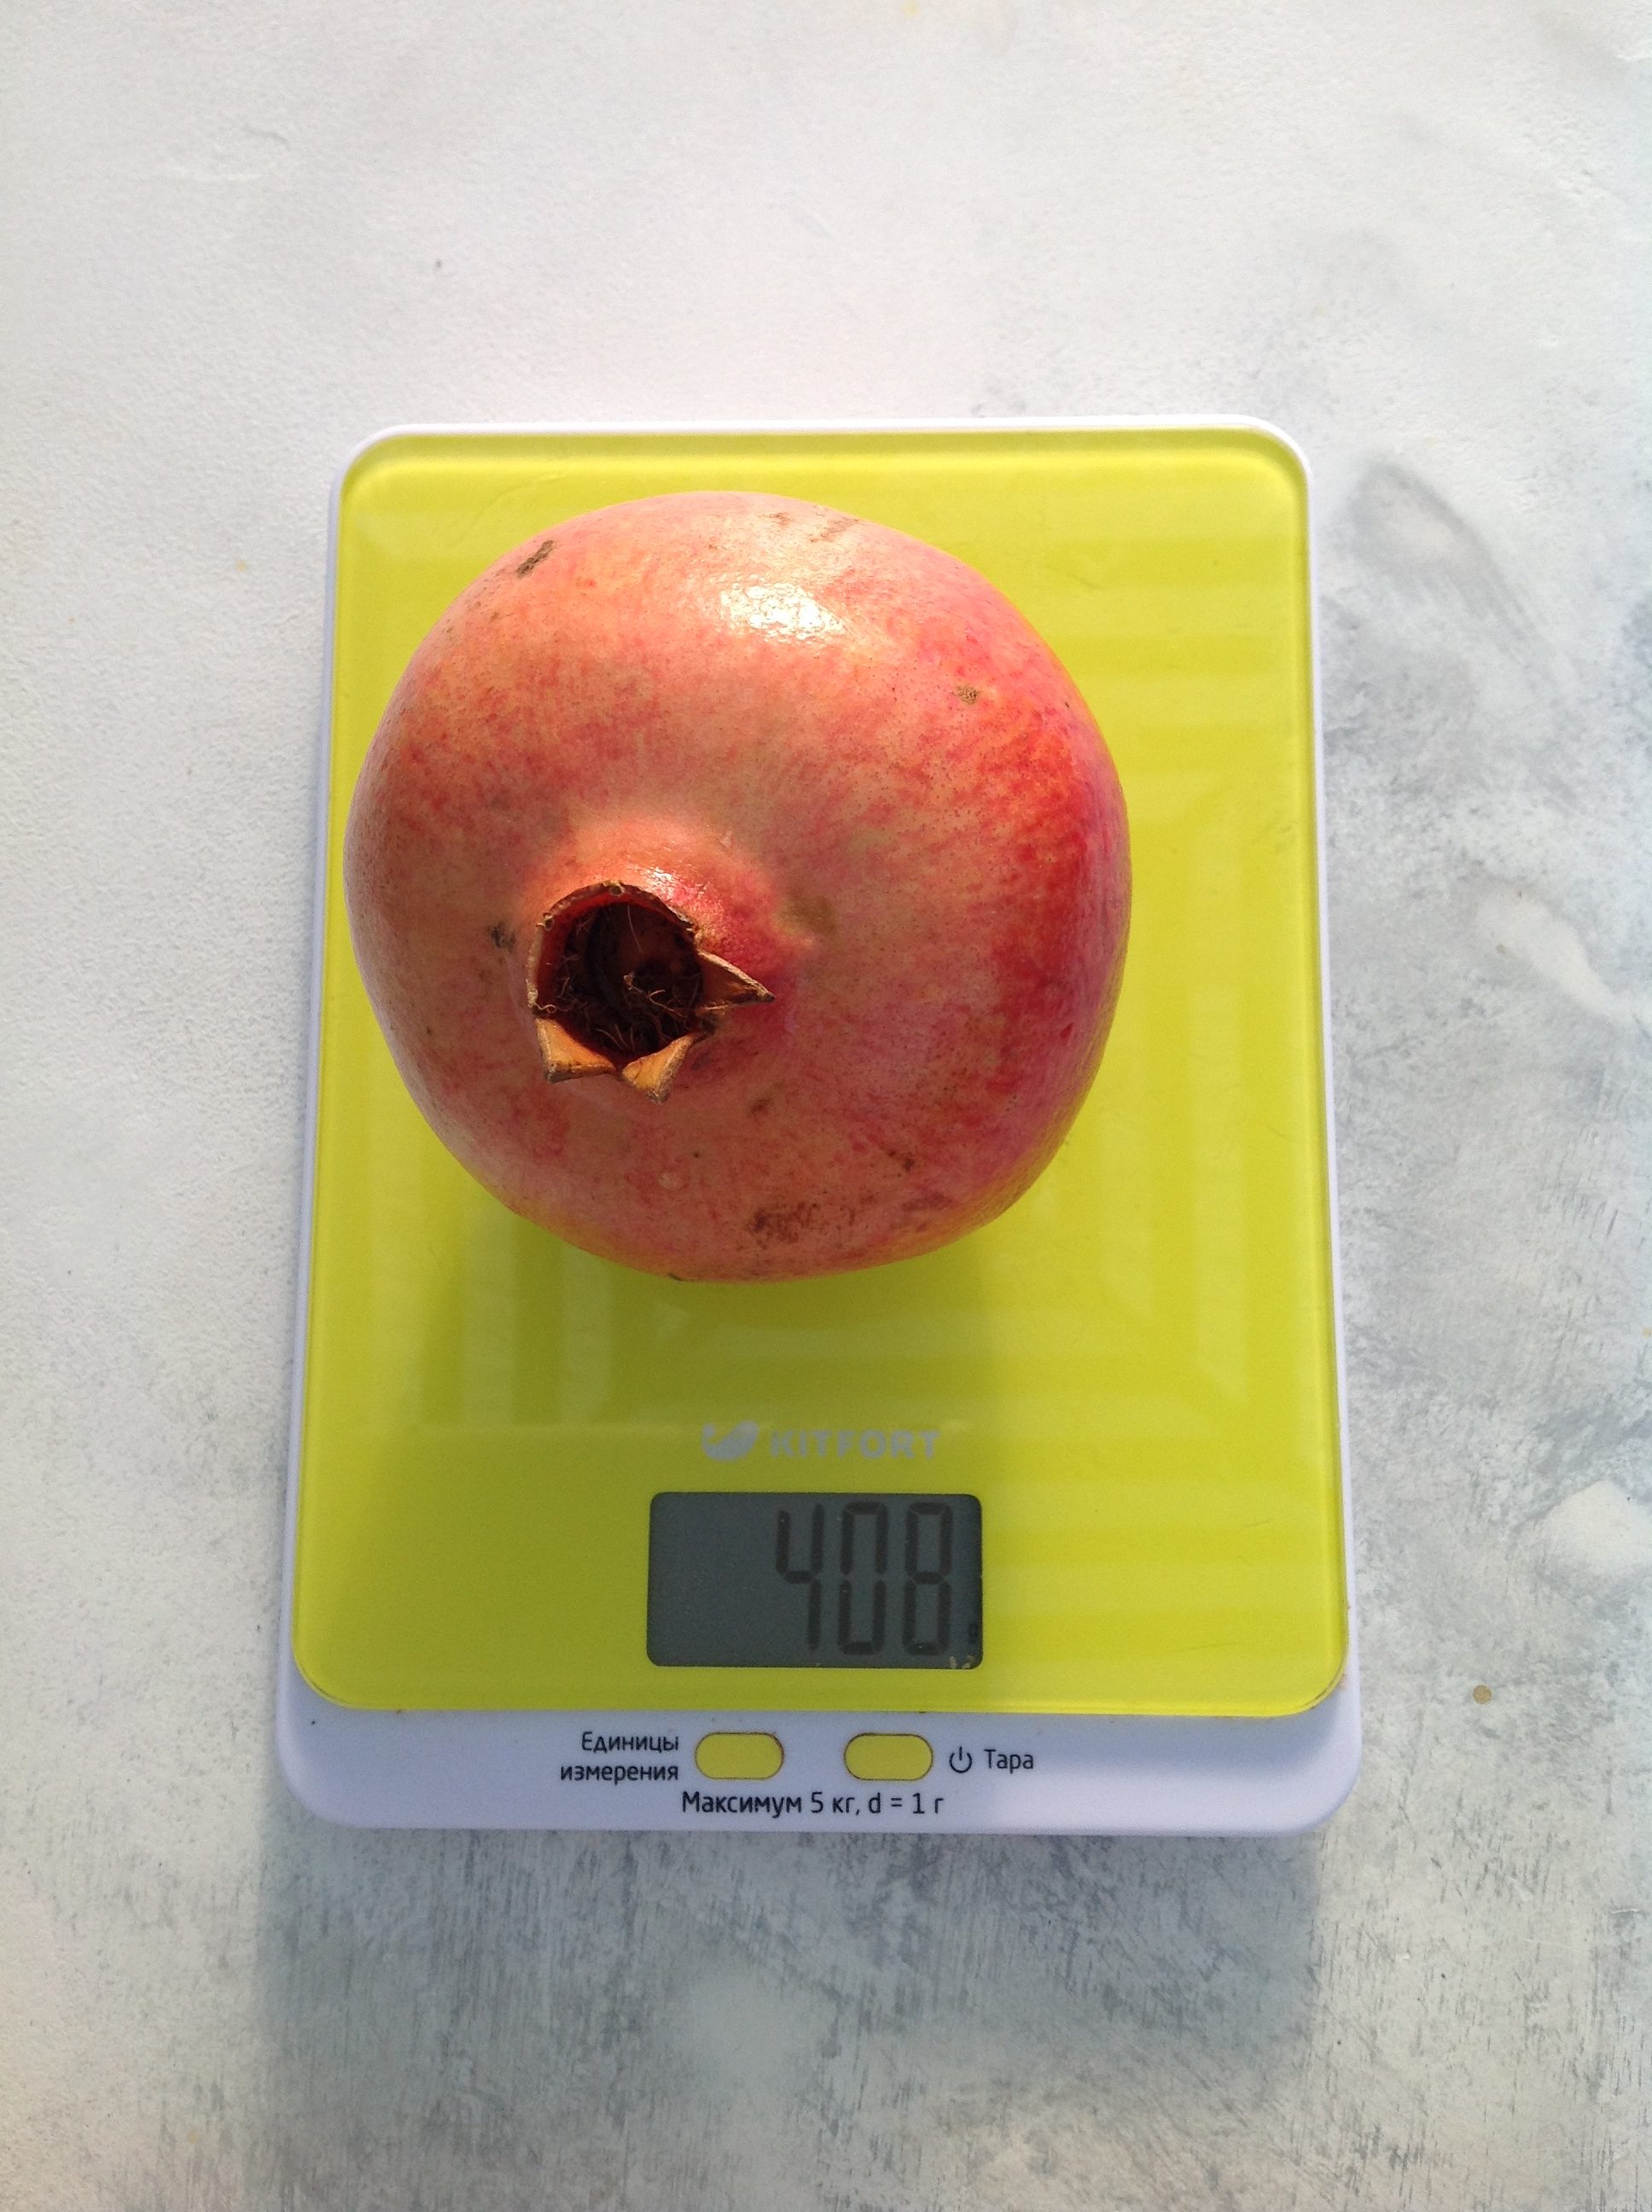 teža srednje velikega granatnega jabolka